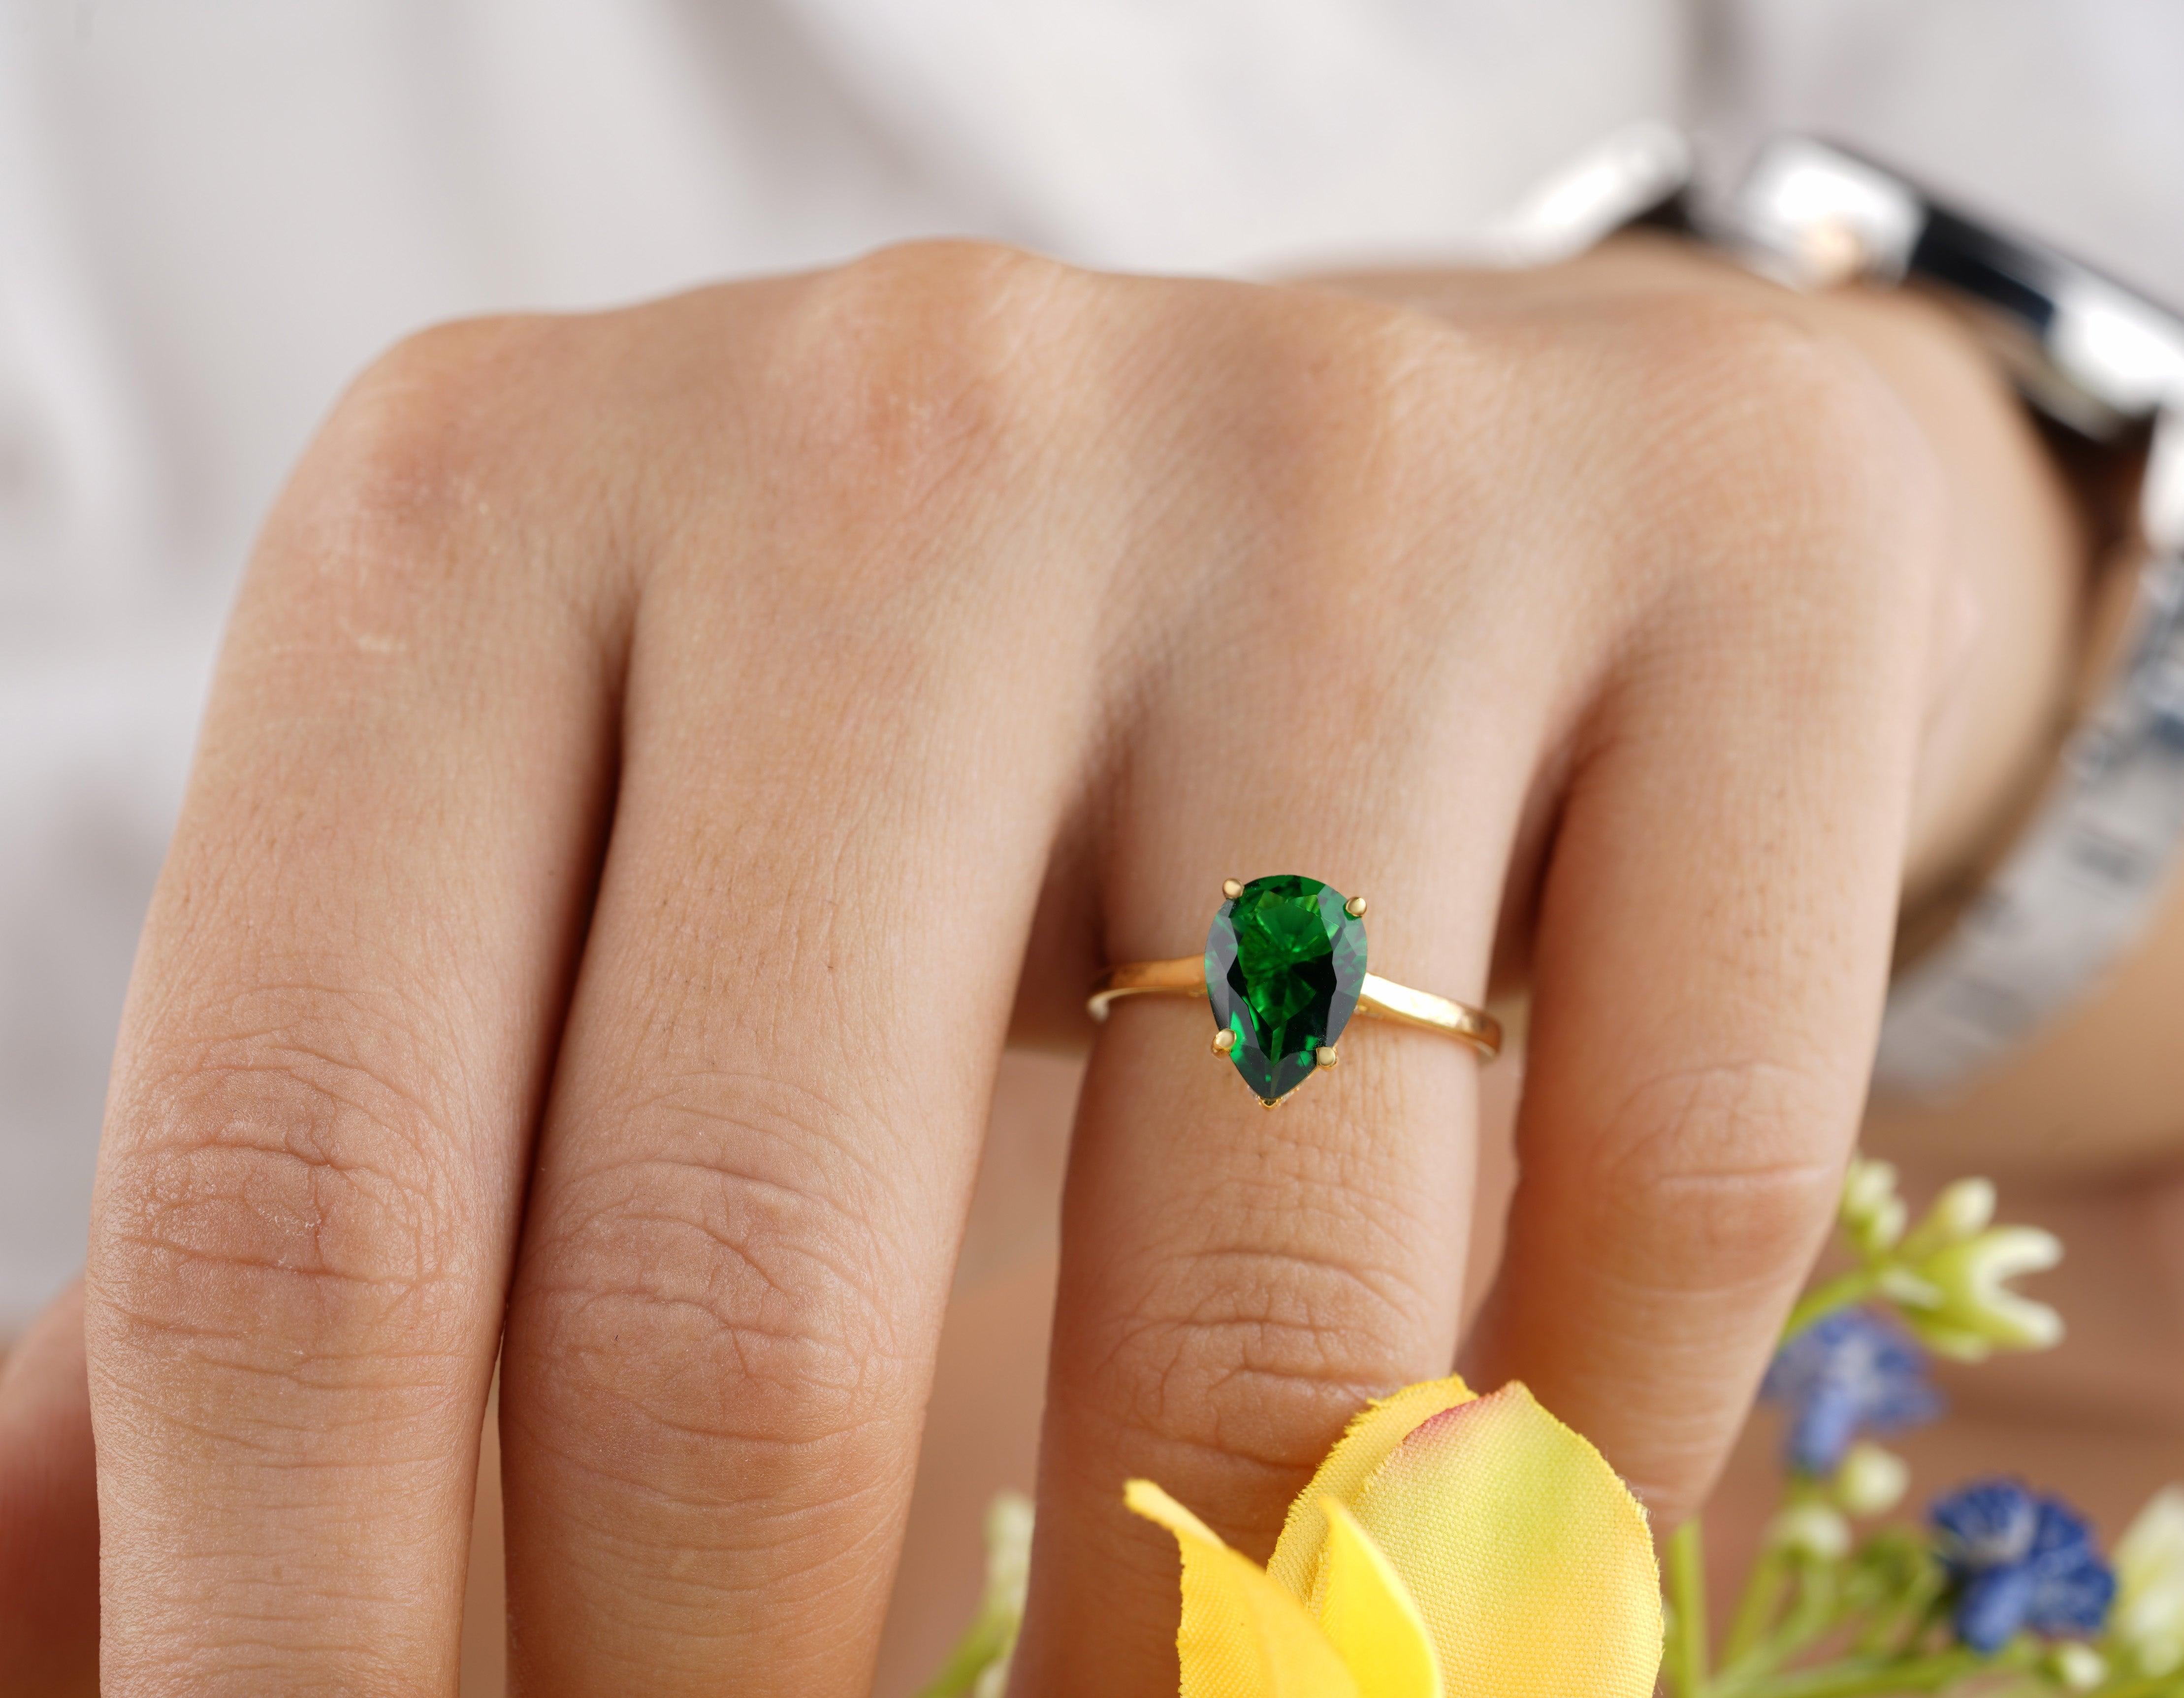 2.60CT Pear Cut Emerald Diamond Engagement Ring - Eurekalook